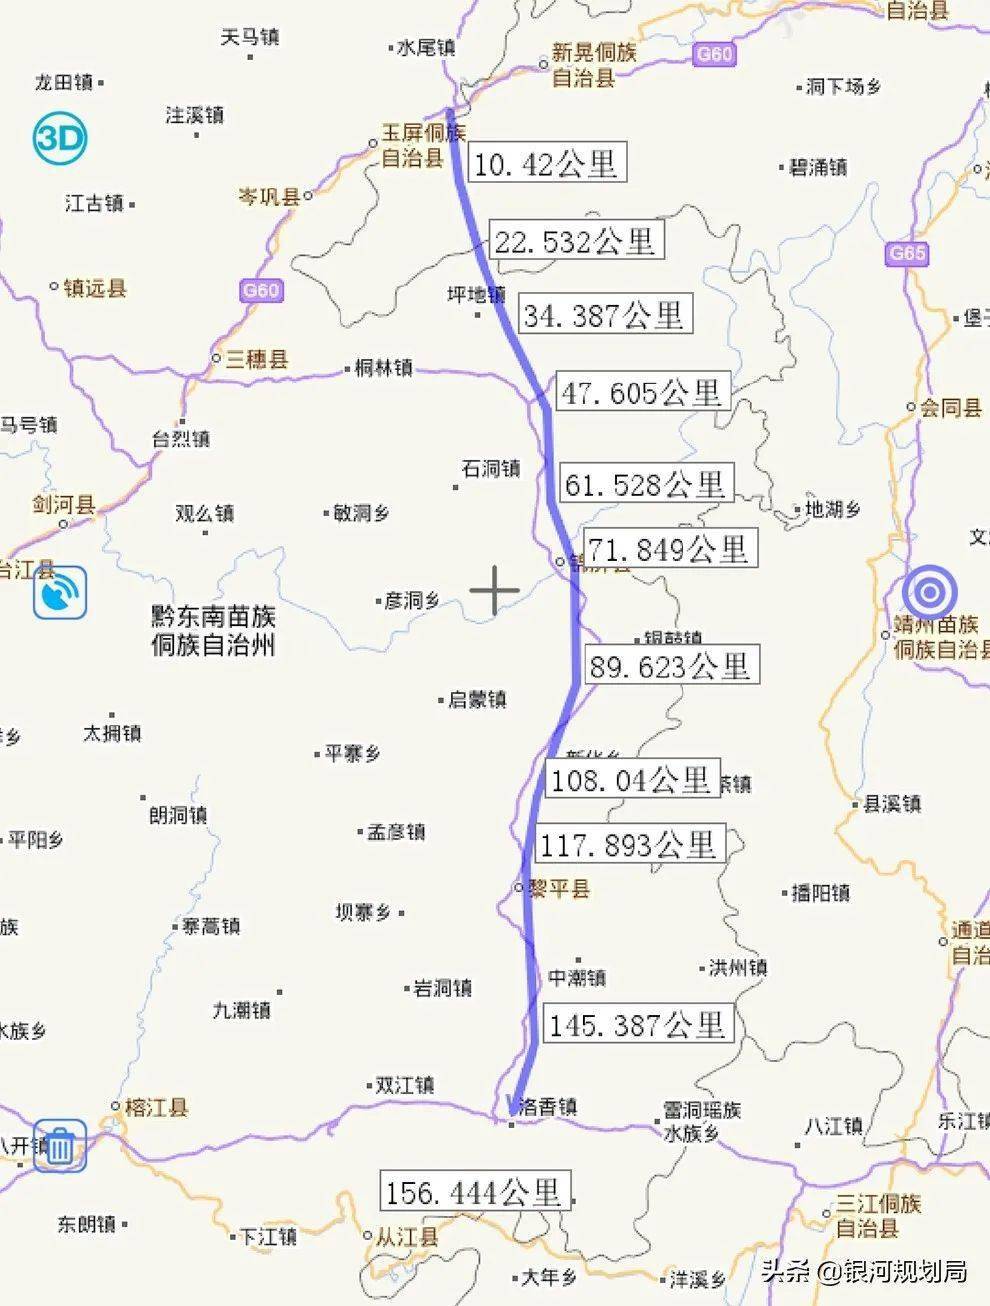 网文称重庆涪陵至广西柳州铁路2年内开工 但天柱,锦屏